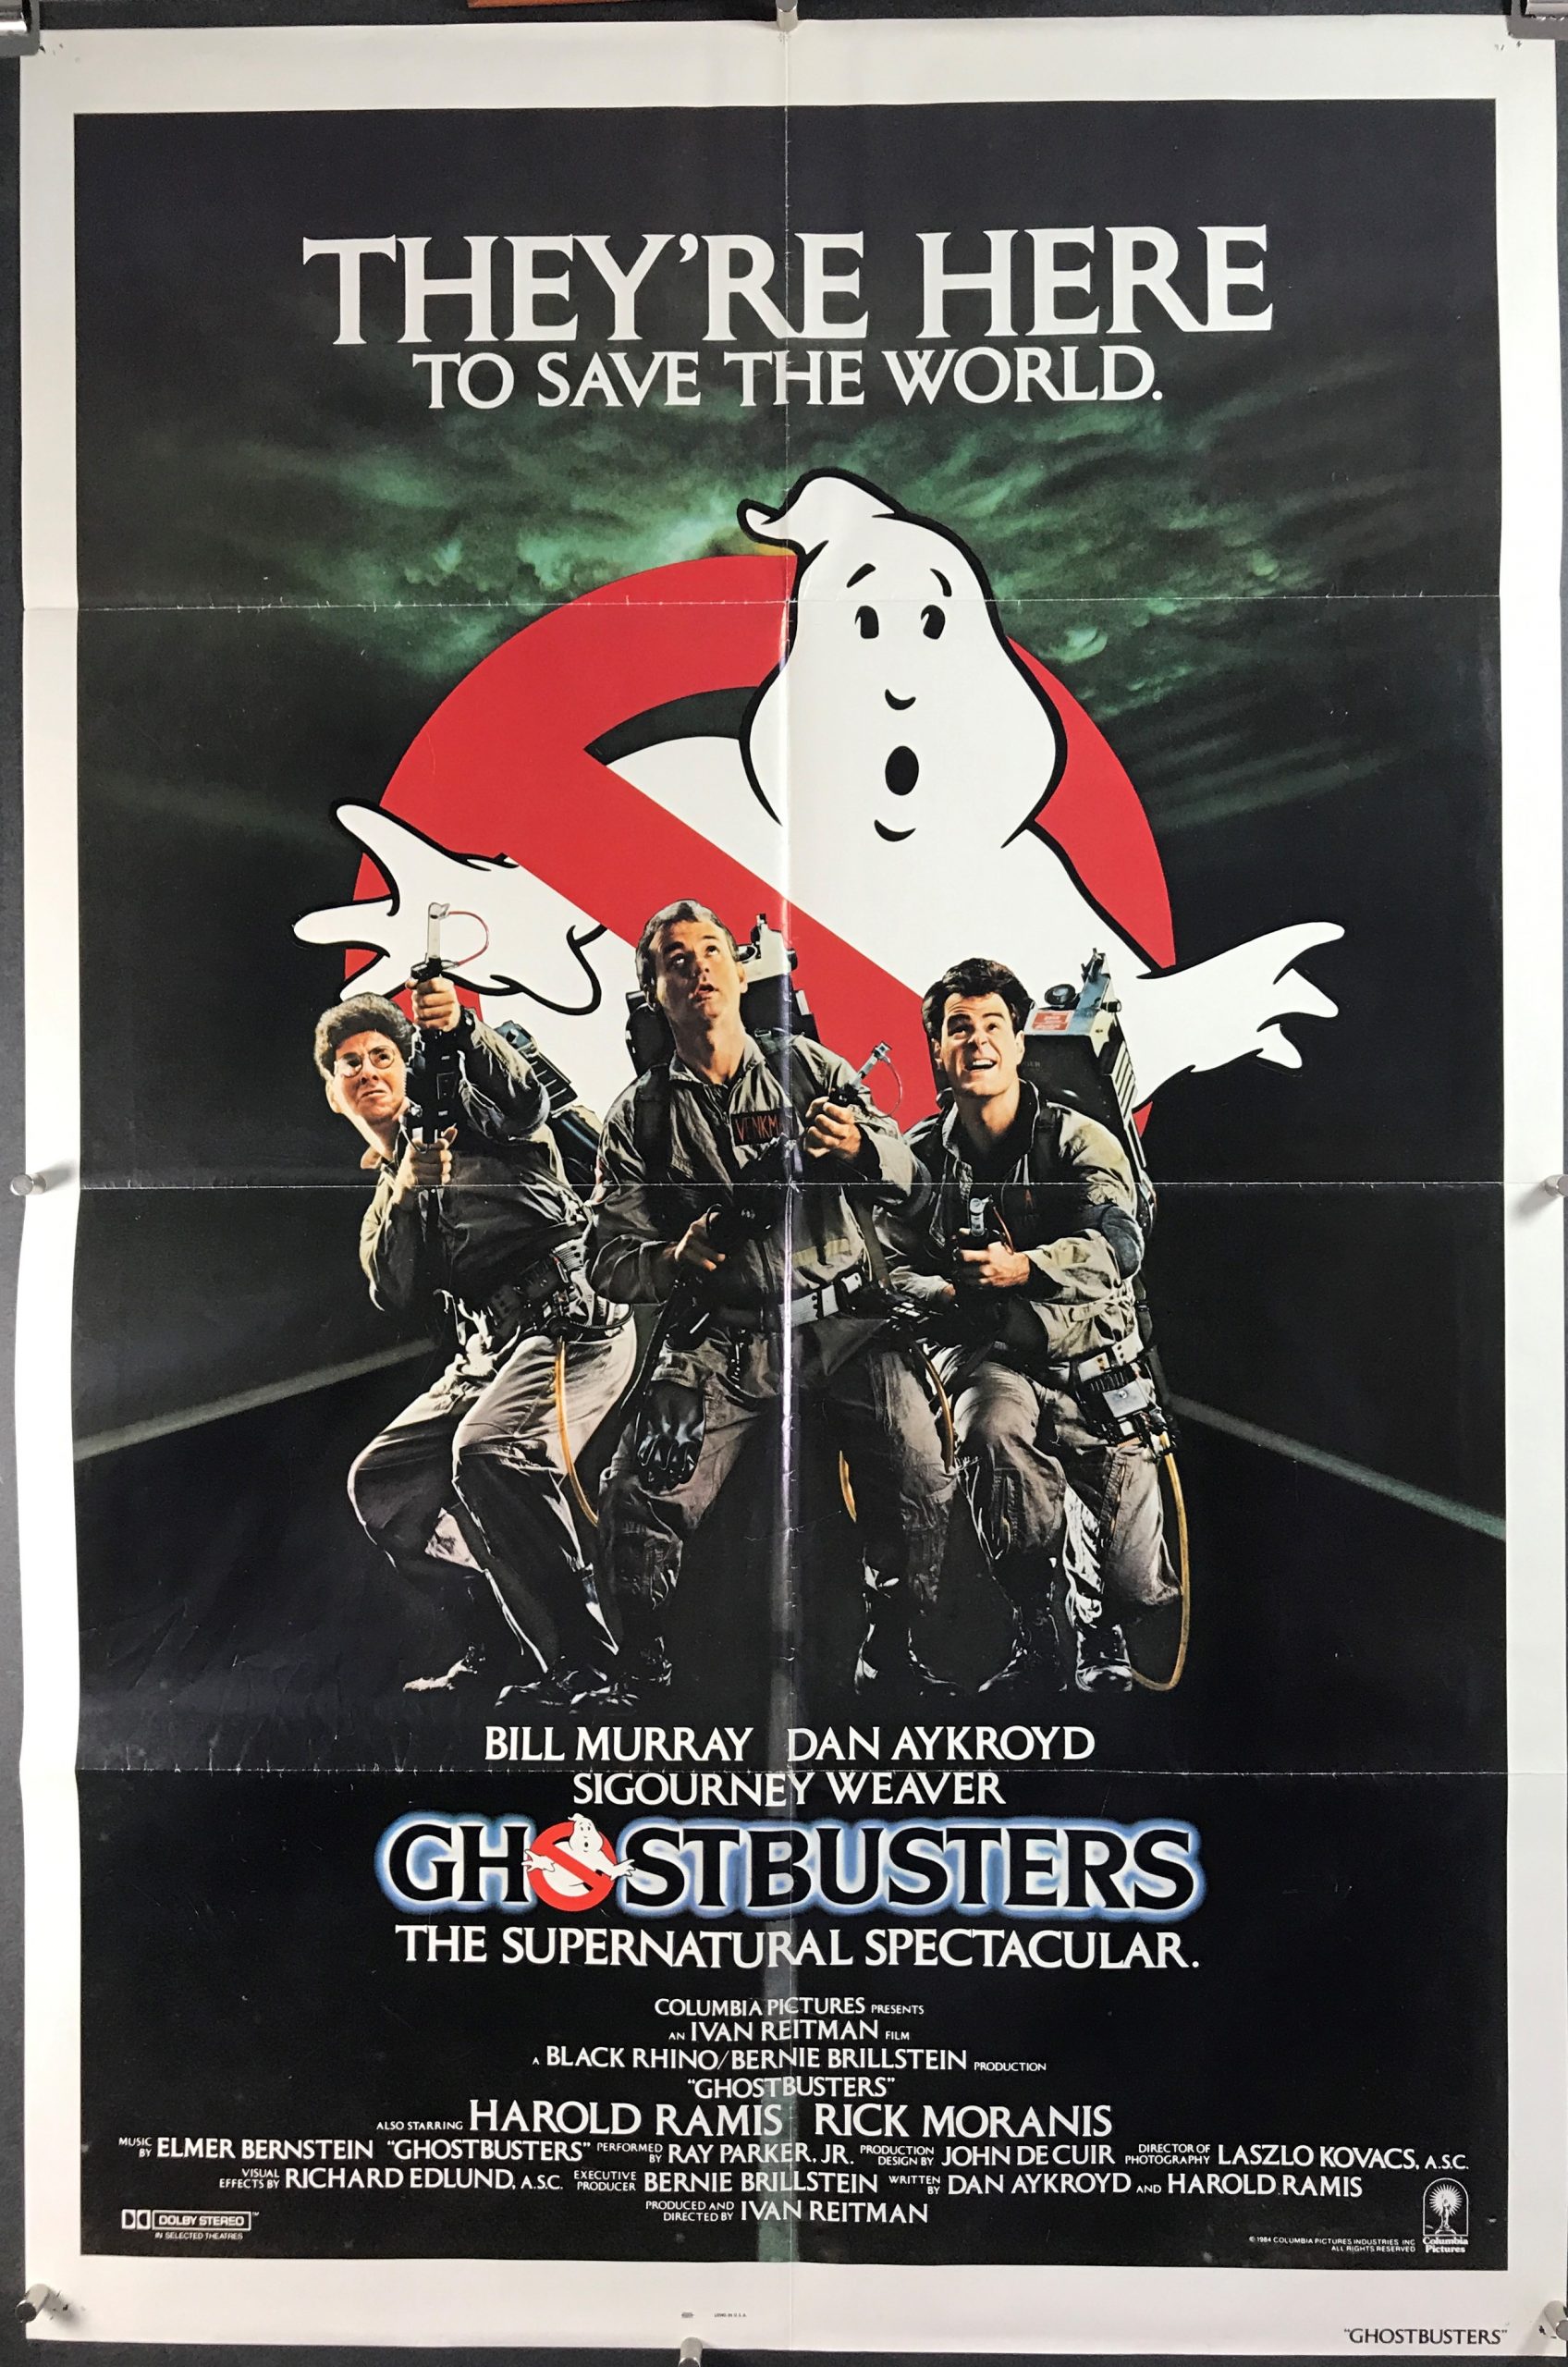 Dan Aykroyd Ghostbusters 1984